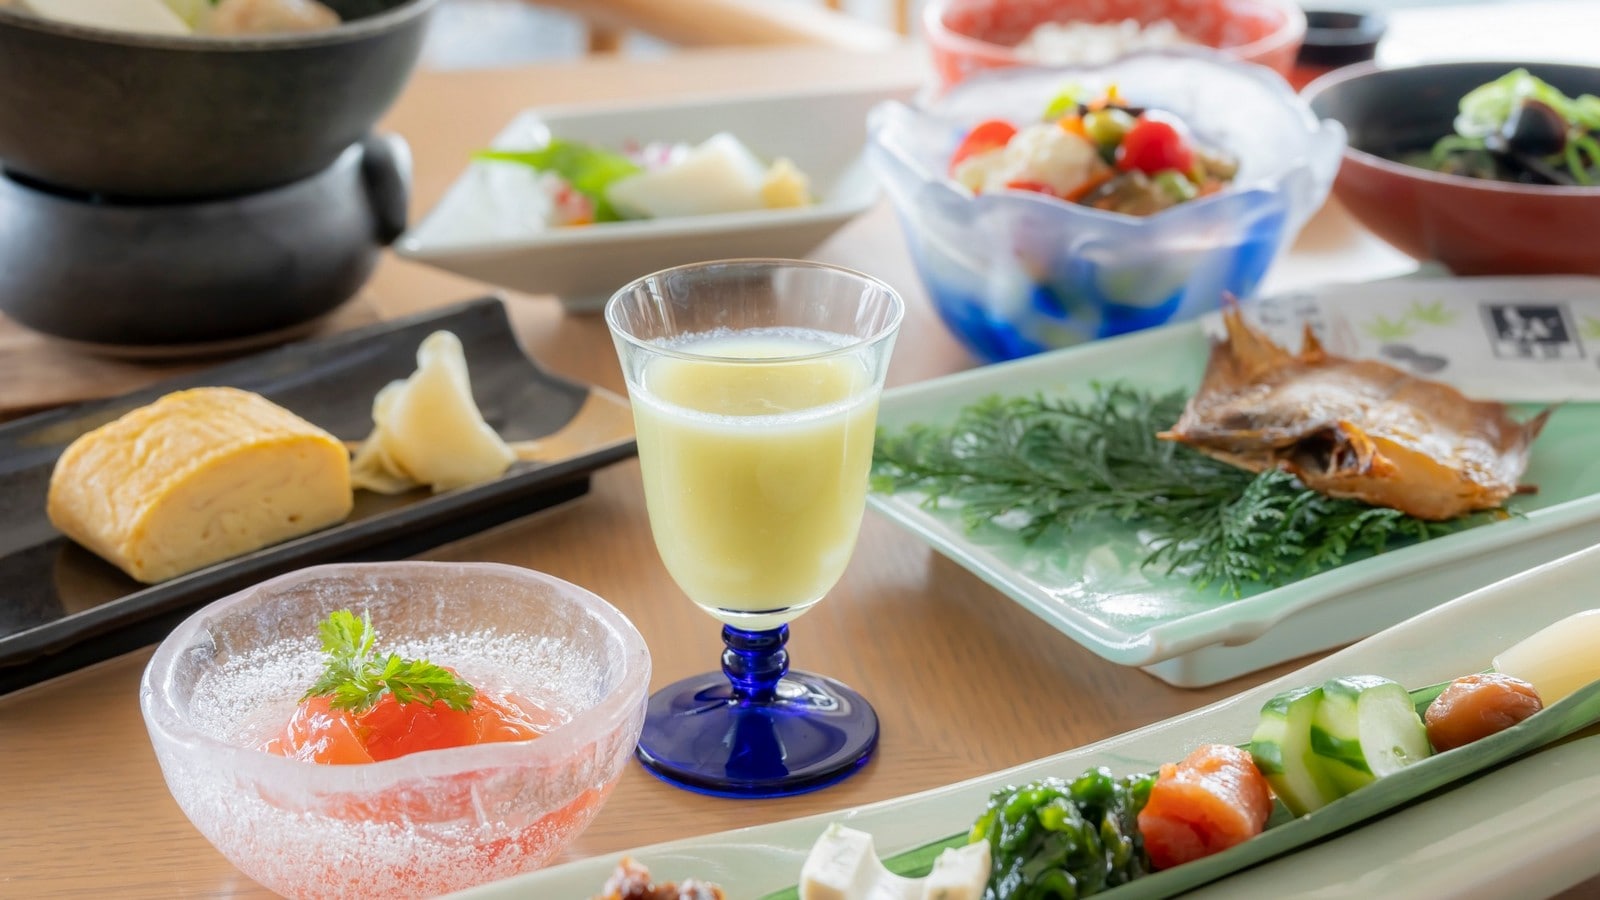 [早餐示例]請從早上開始享用鳥取縣的越光米和使用當地食材製作的時令味噌湯。